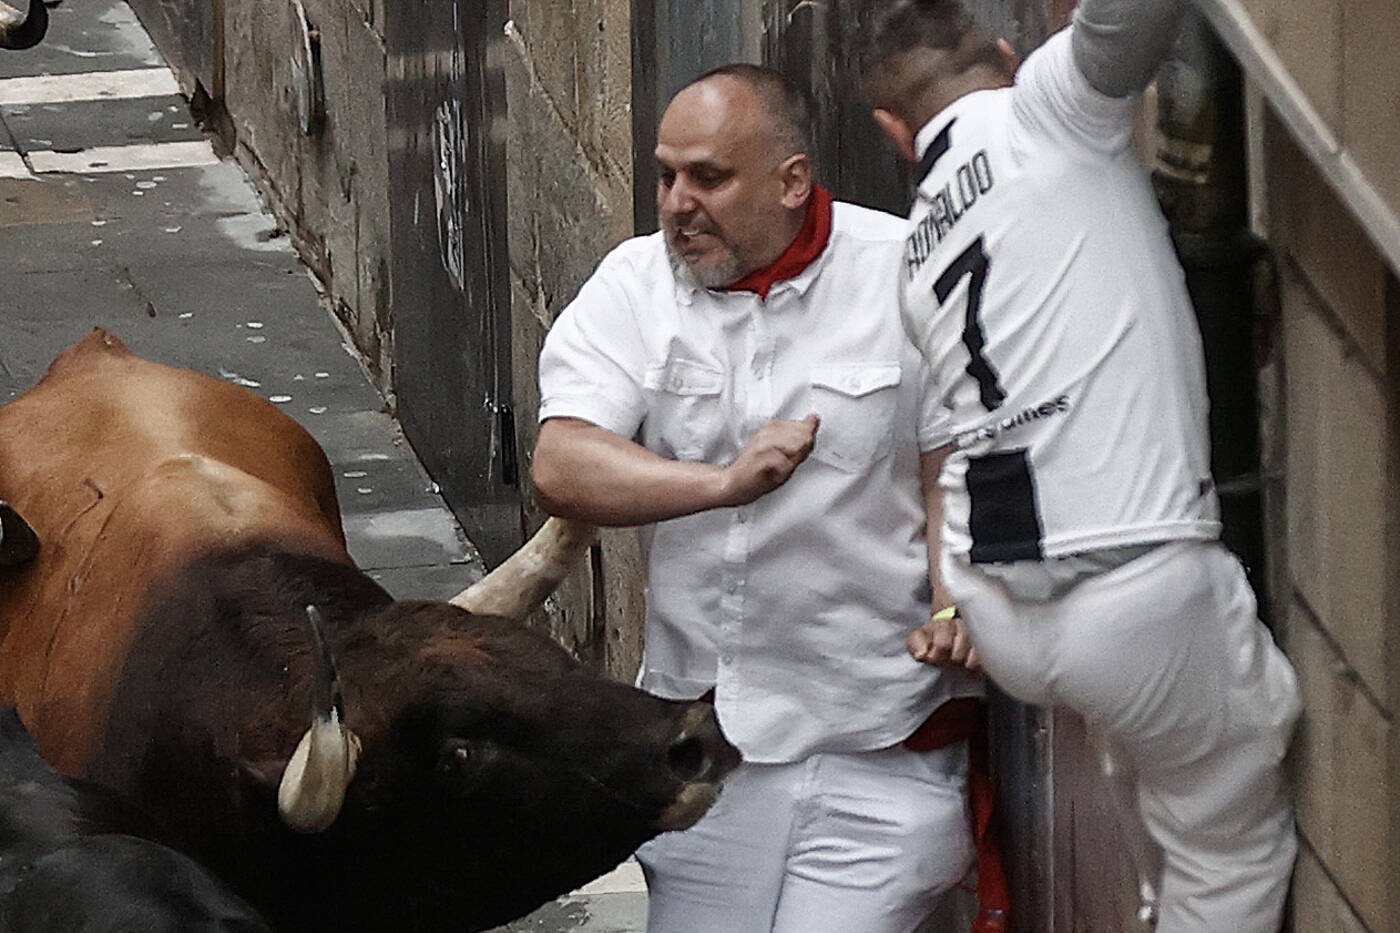 Homens provocam touros, são perseguidos, deitam no chão em posição